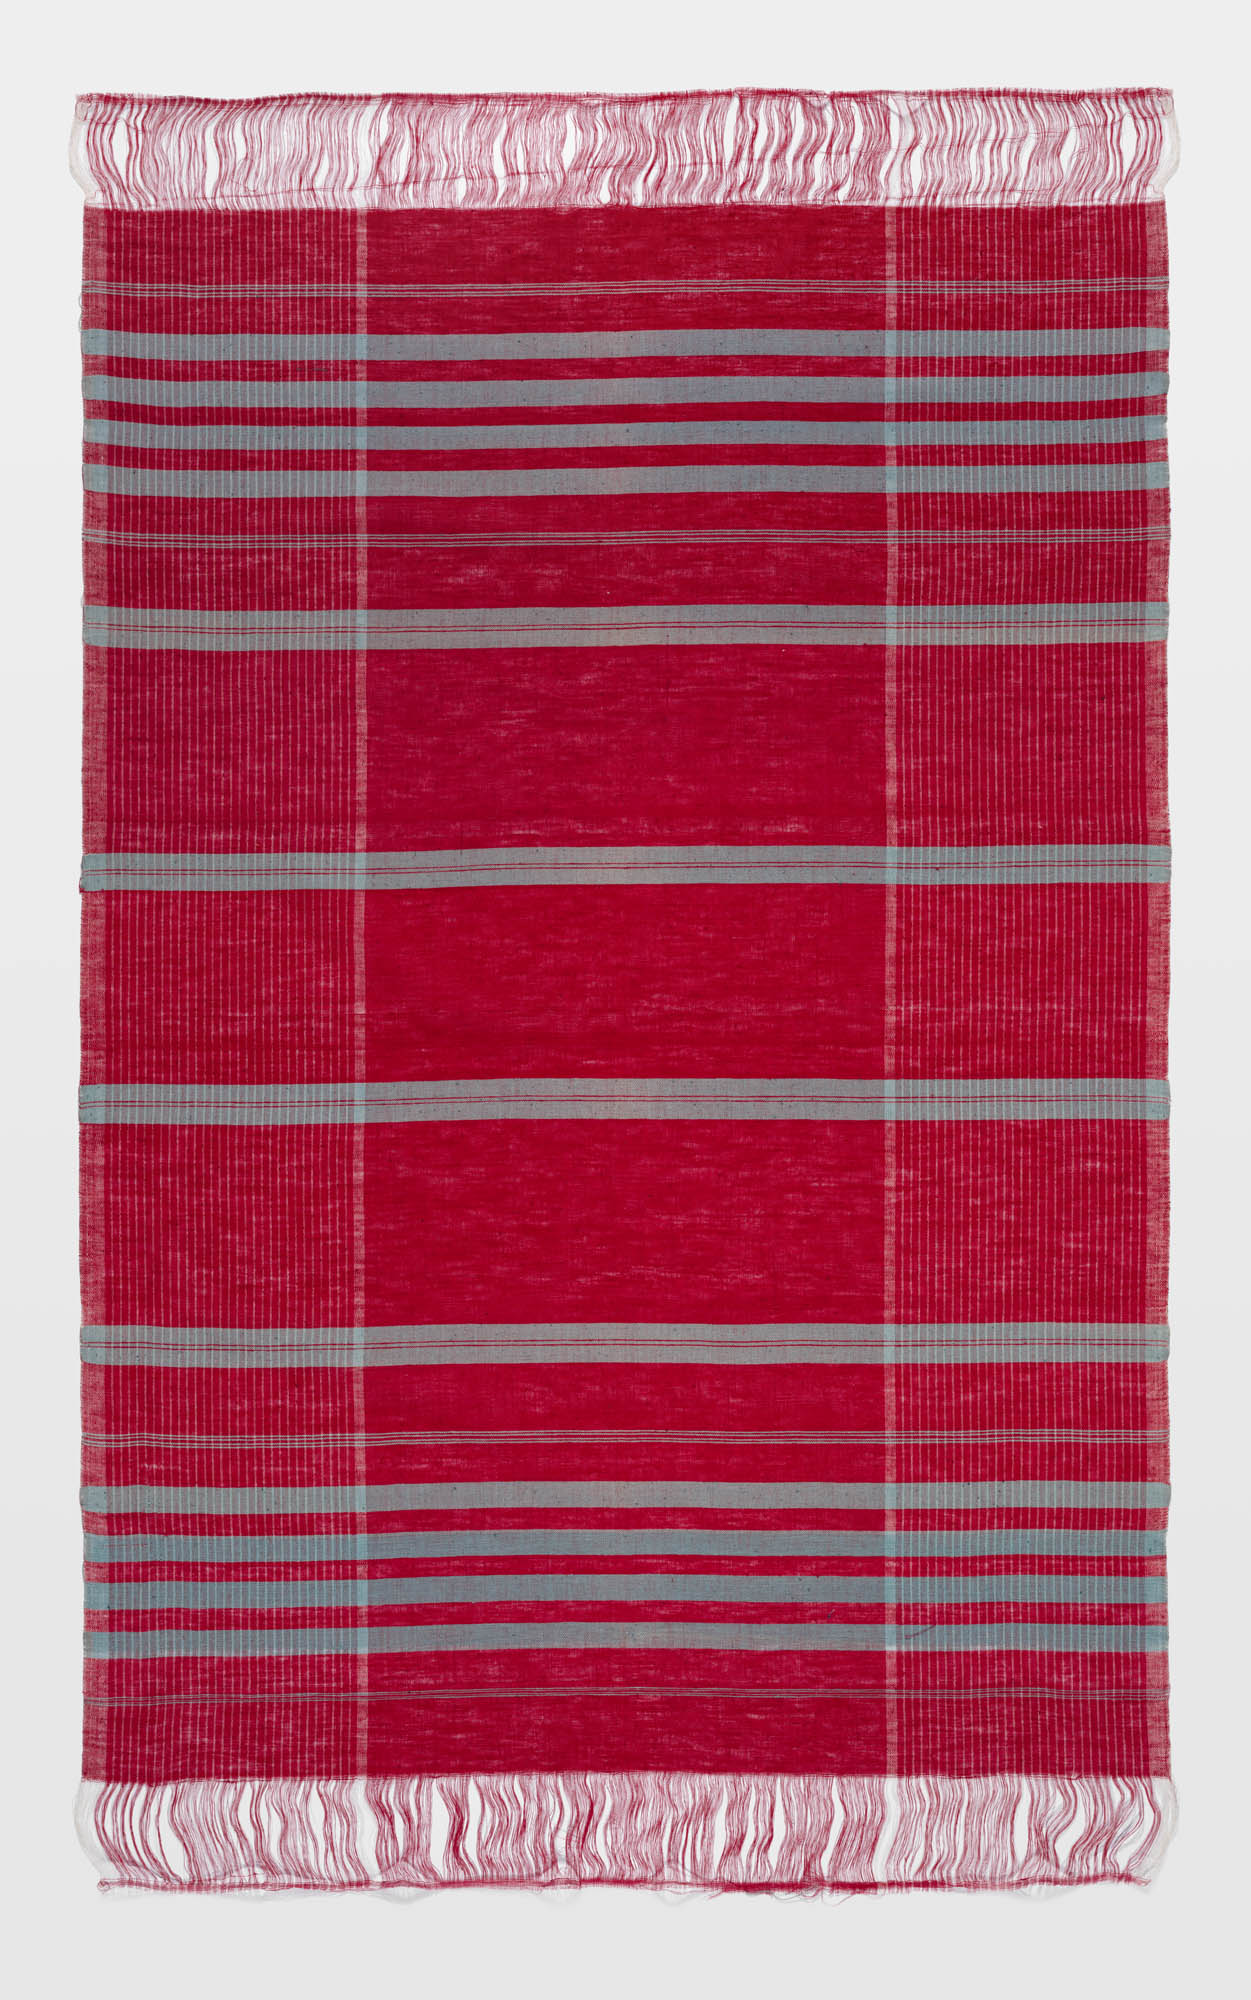 Handkerchief – Strawberry Ground Fröhlich Brunnschweiler & Cie. Fabric remnant